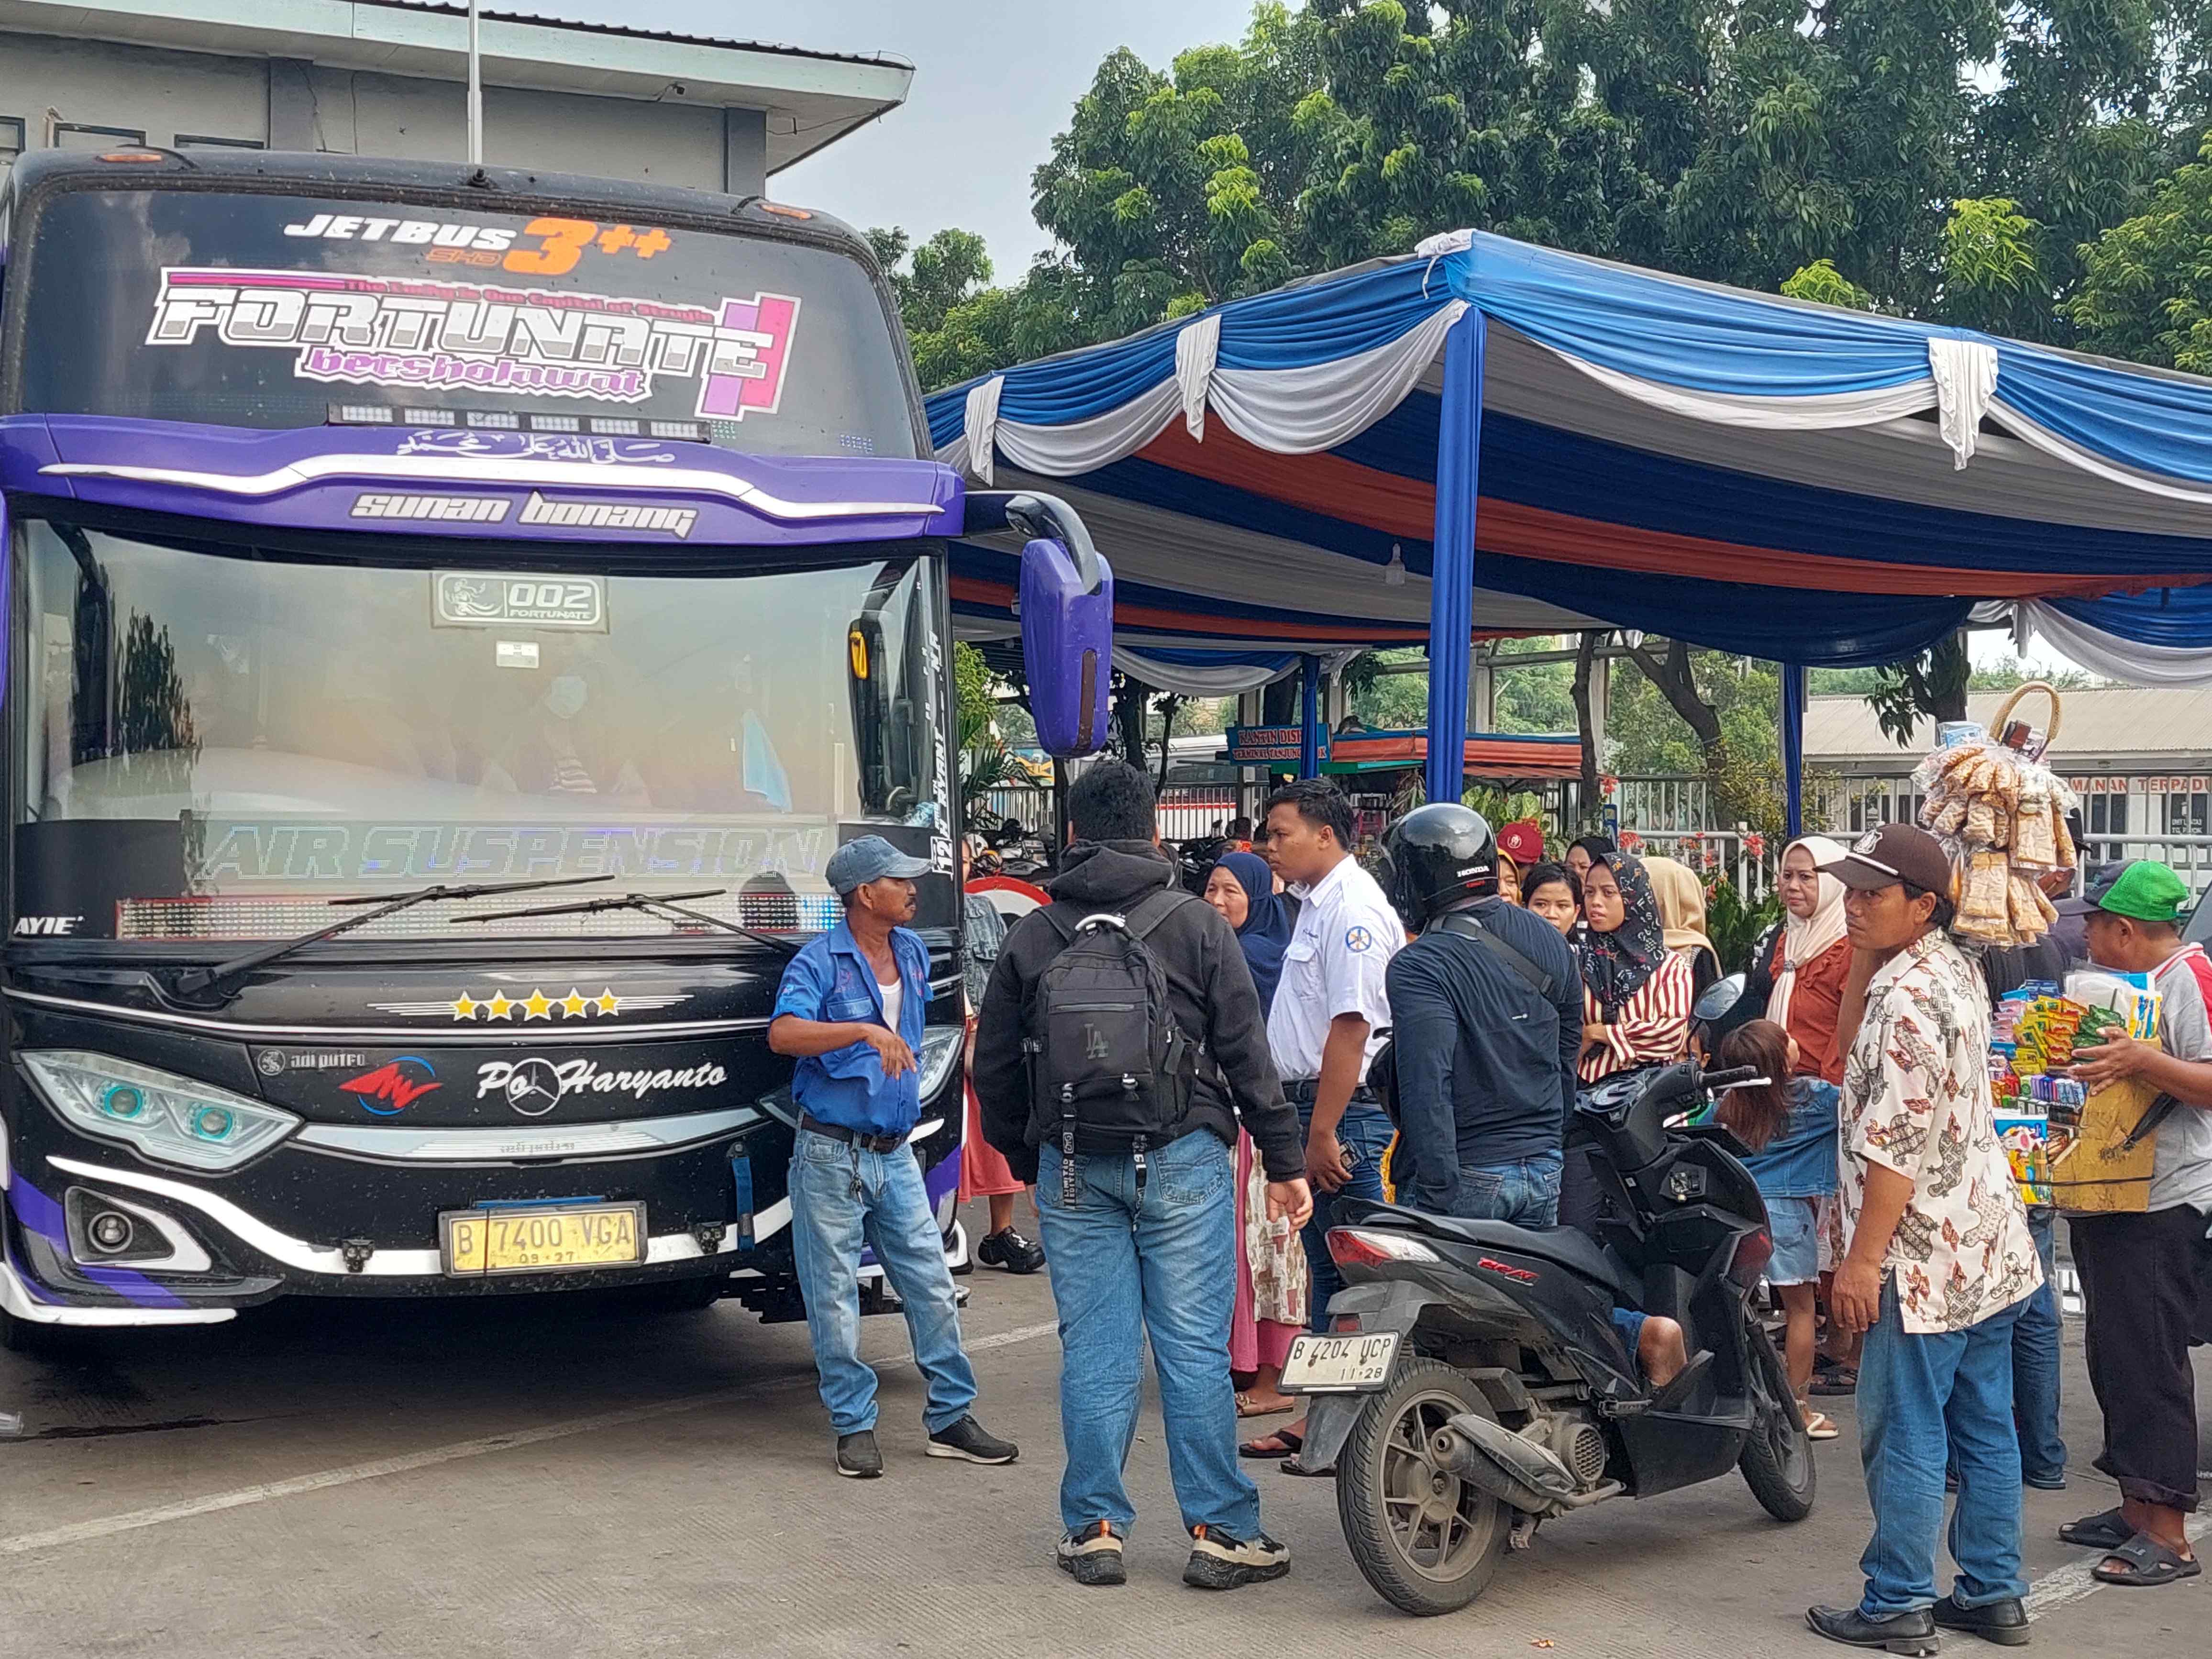  Antisipasi Premanisme Saat Lonjakan Pemudik, Dishub Kerjasama dengan Polri Tempatkan Personel di Terminal Tanjung Priok